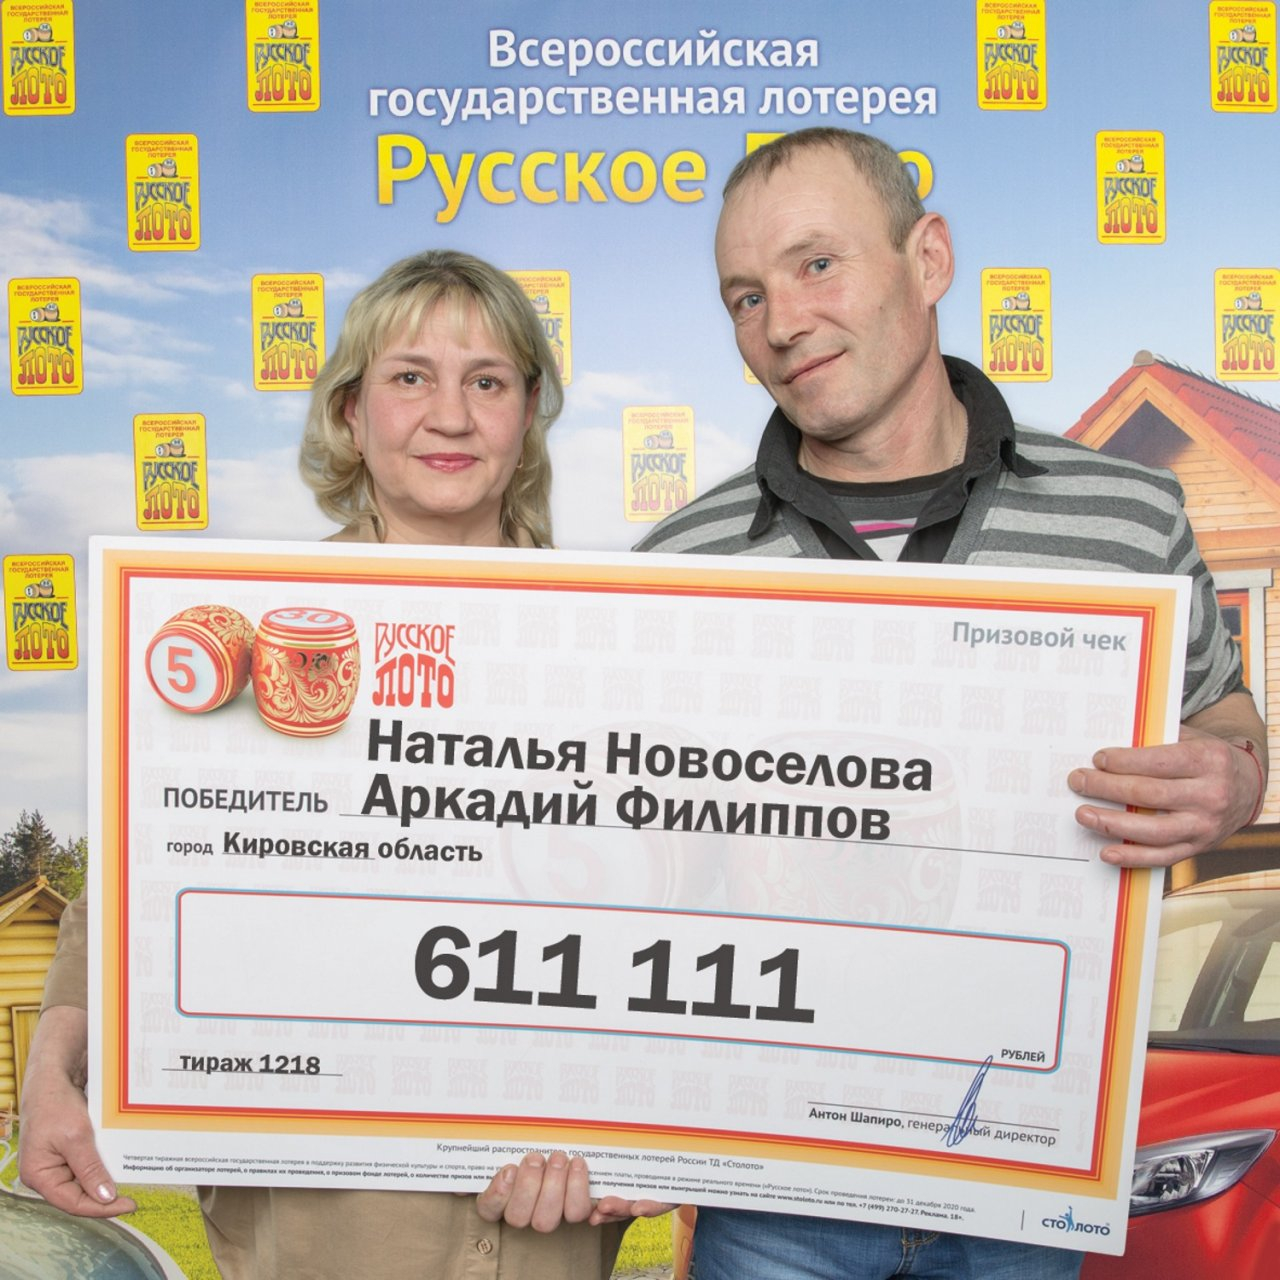 "Мы выиграли 611 111 рублей благодаря котенку": семья из Кирова об участии в лотерее